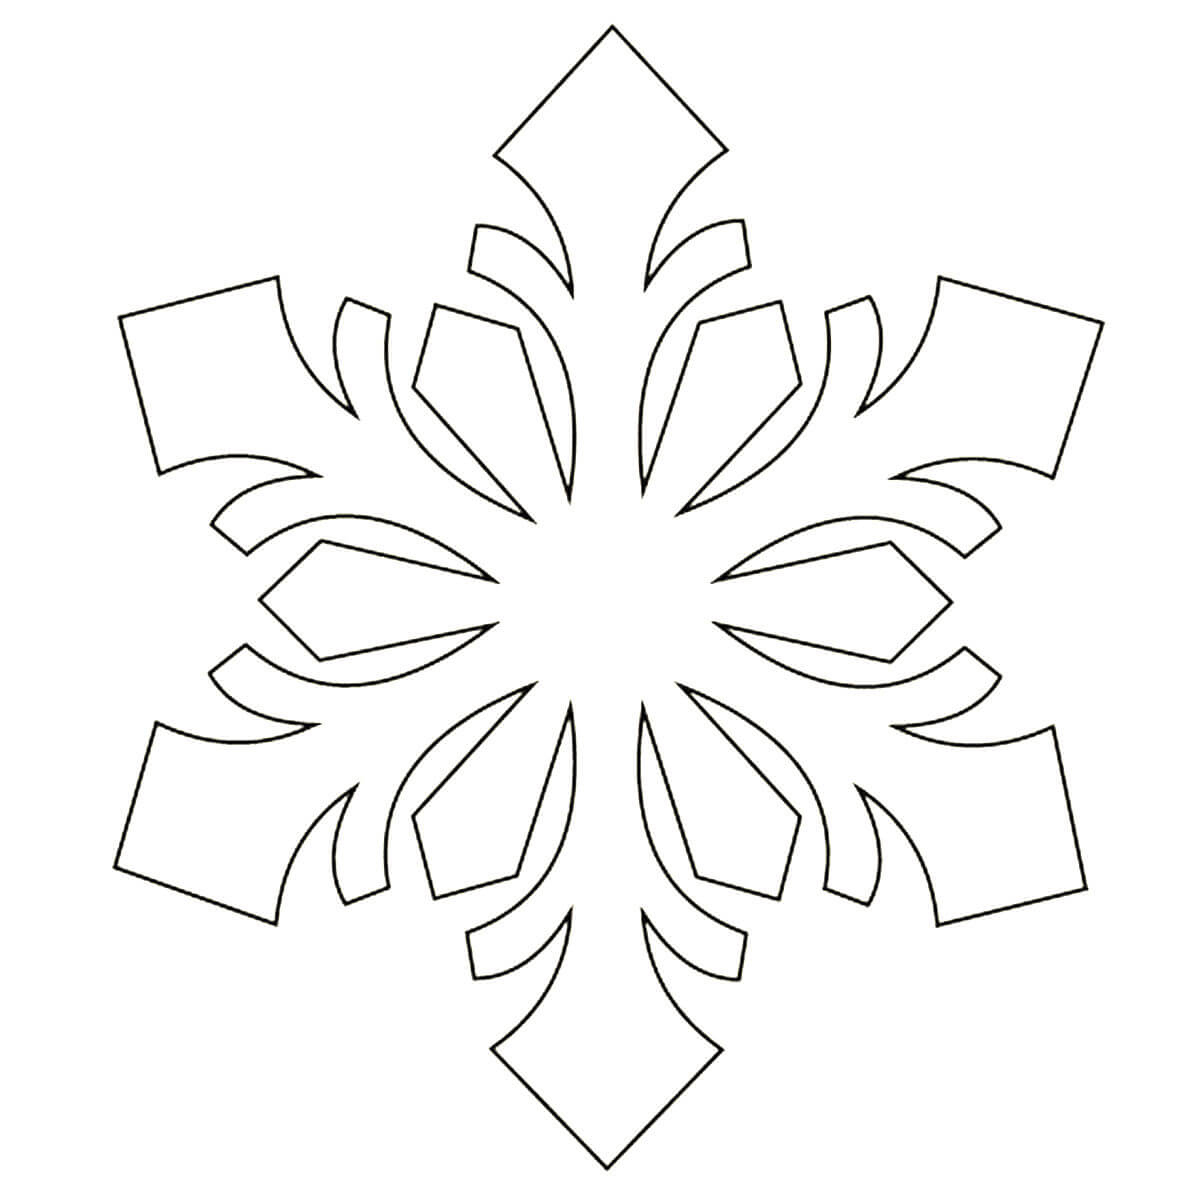 Раскраска Скачать новогодние снежинки. Как вырезать из бумаги снежинку.  Распечатать трафареты и шаблоны снежинок на новый год бесплатно